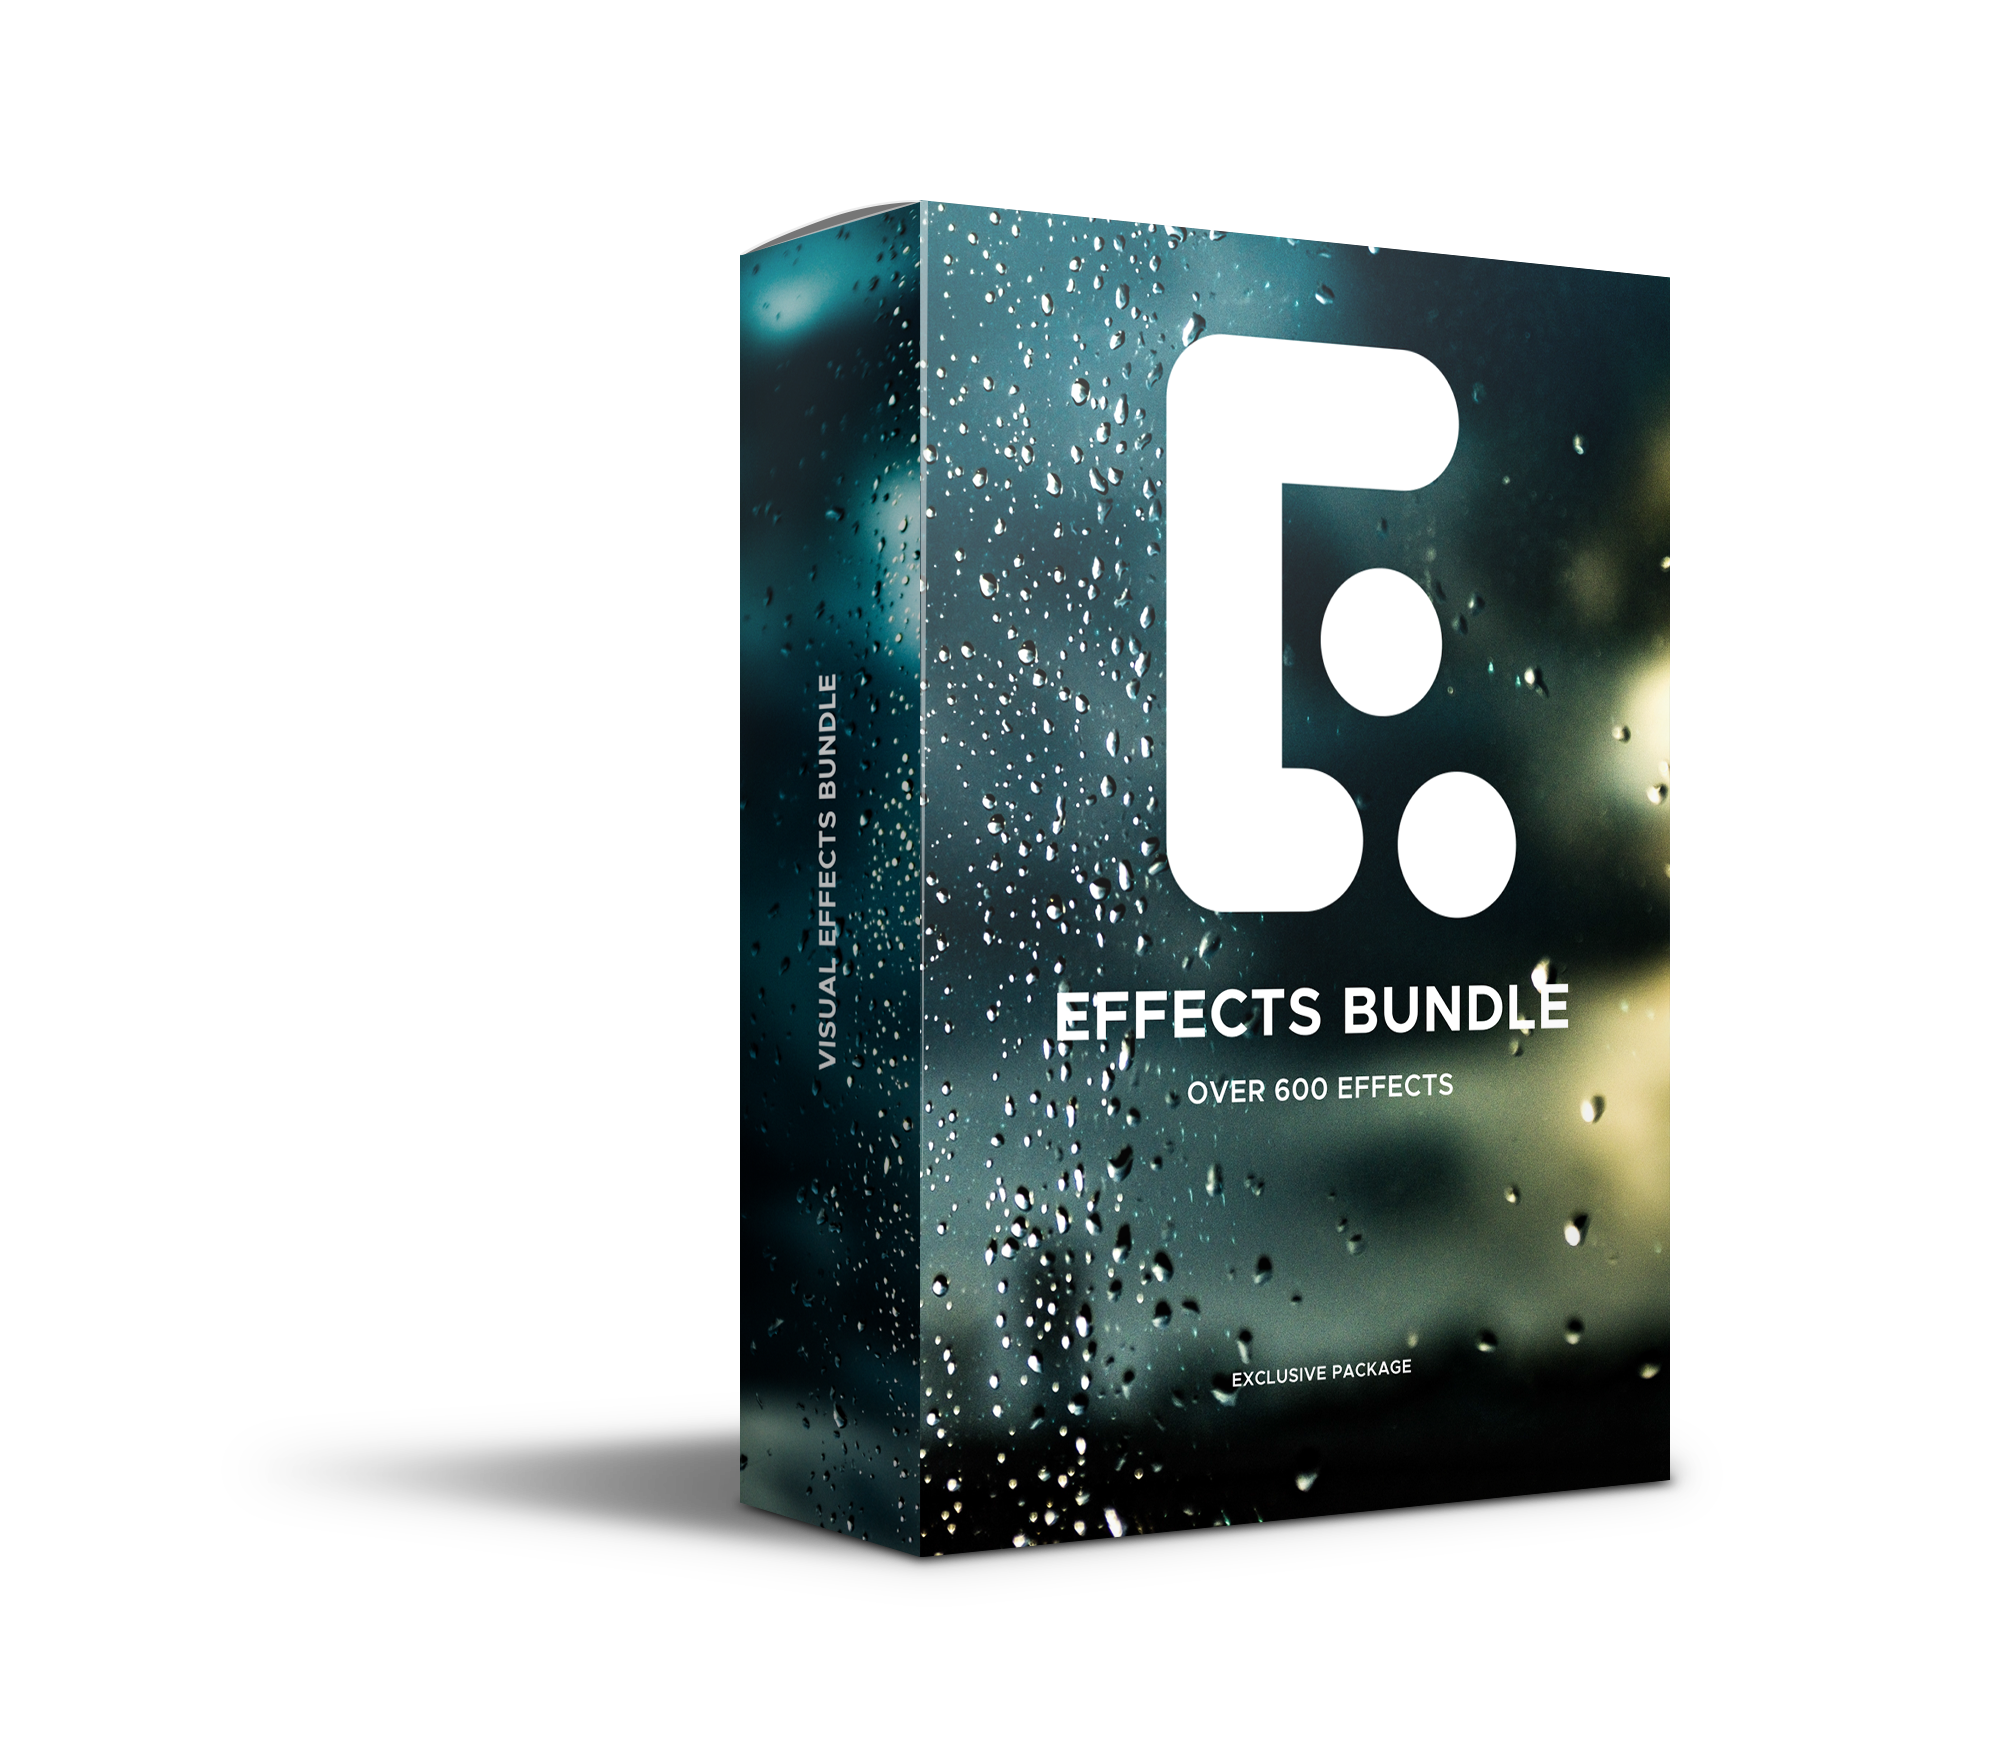 دانلود مجموعه پریست های آماده شامل افکت و ترانزیشن های متنوع برای پریمیر - 600 Adobe Premiere Pro Effects And Transitions